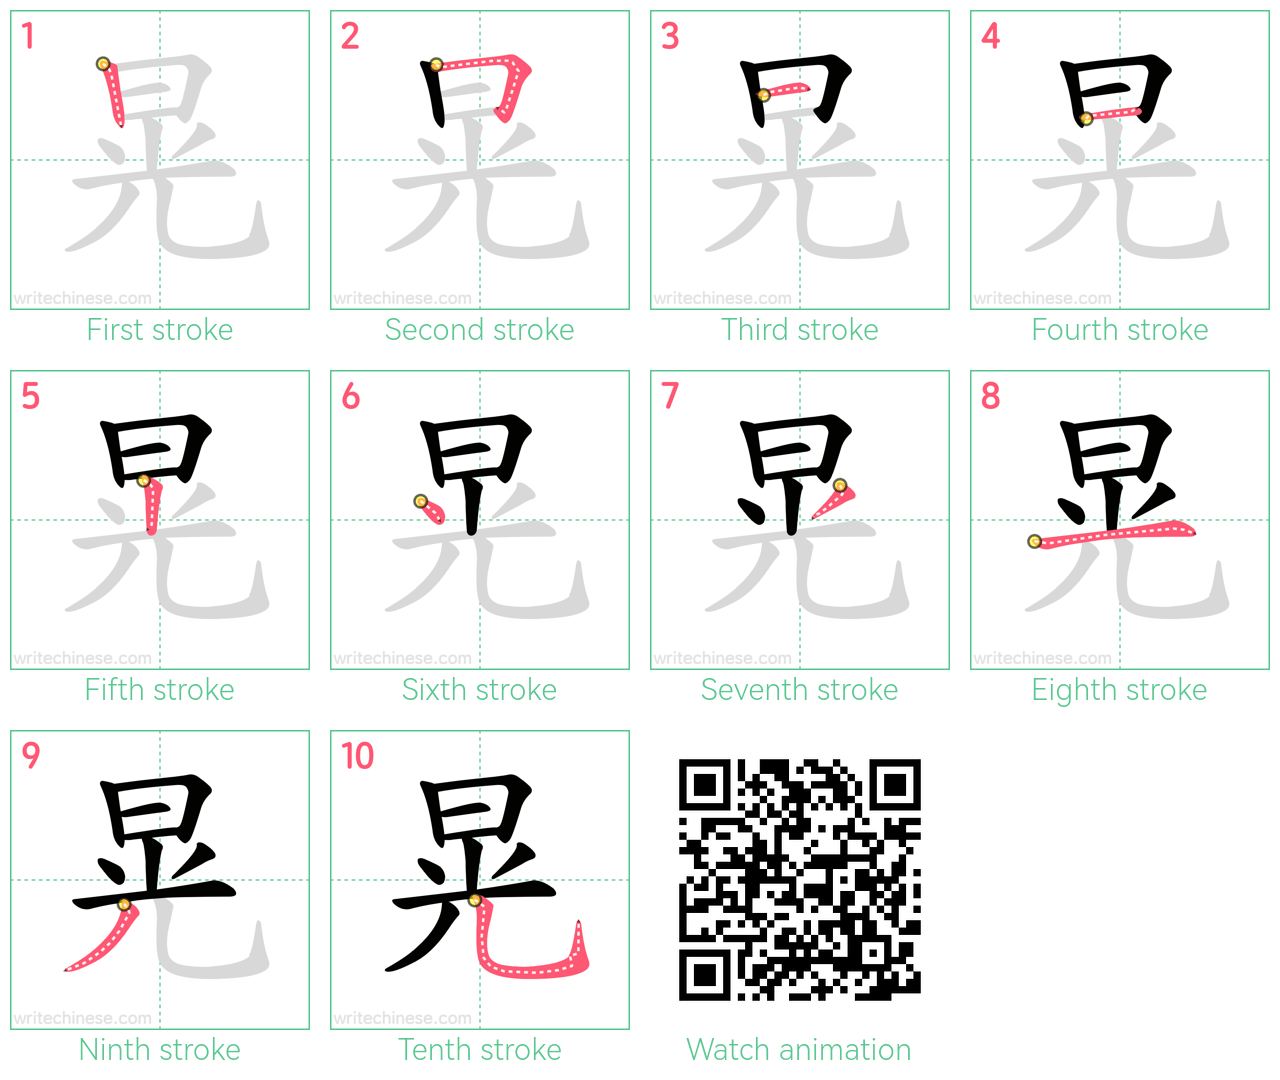 晃 step-by-step stroke order diagrams